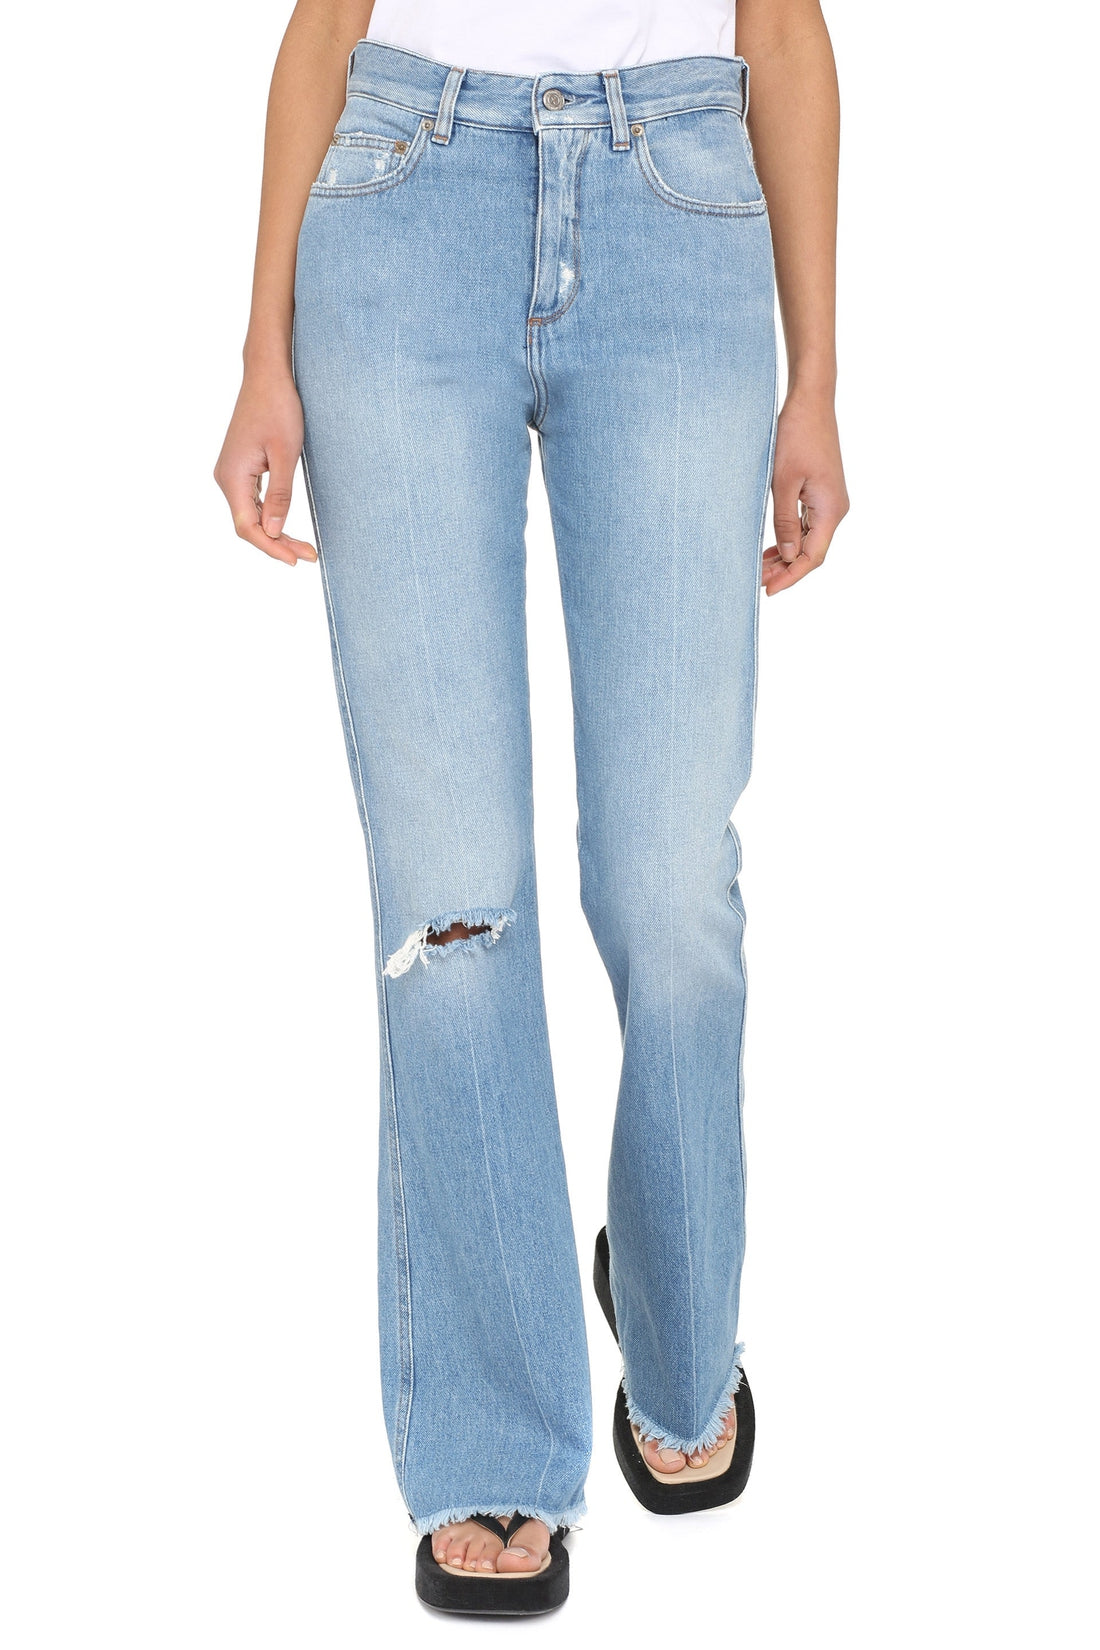 Golden Goose-OUTLET-SALE-5-pocket jeans-ARCHIVIST